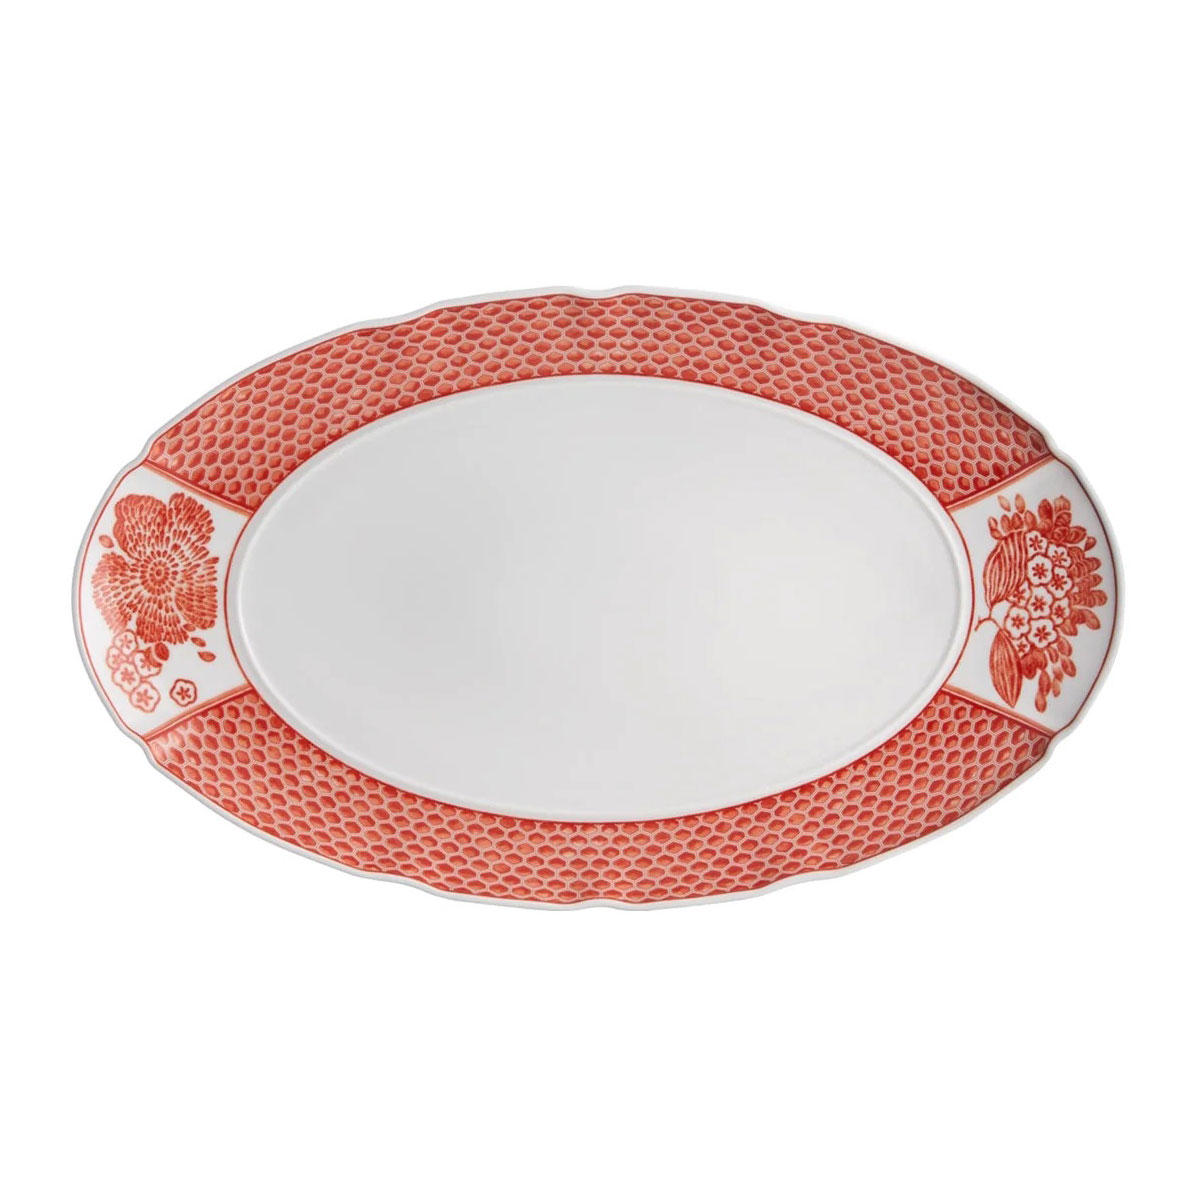 Vista Alegre Porcelain Coralina Large Oval Platter